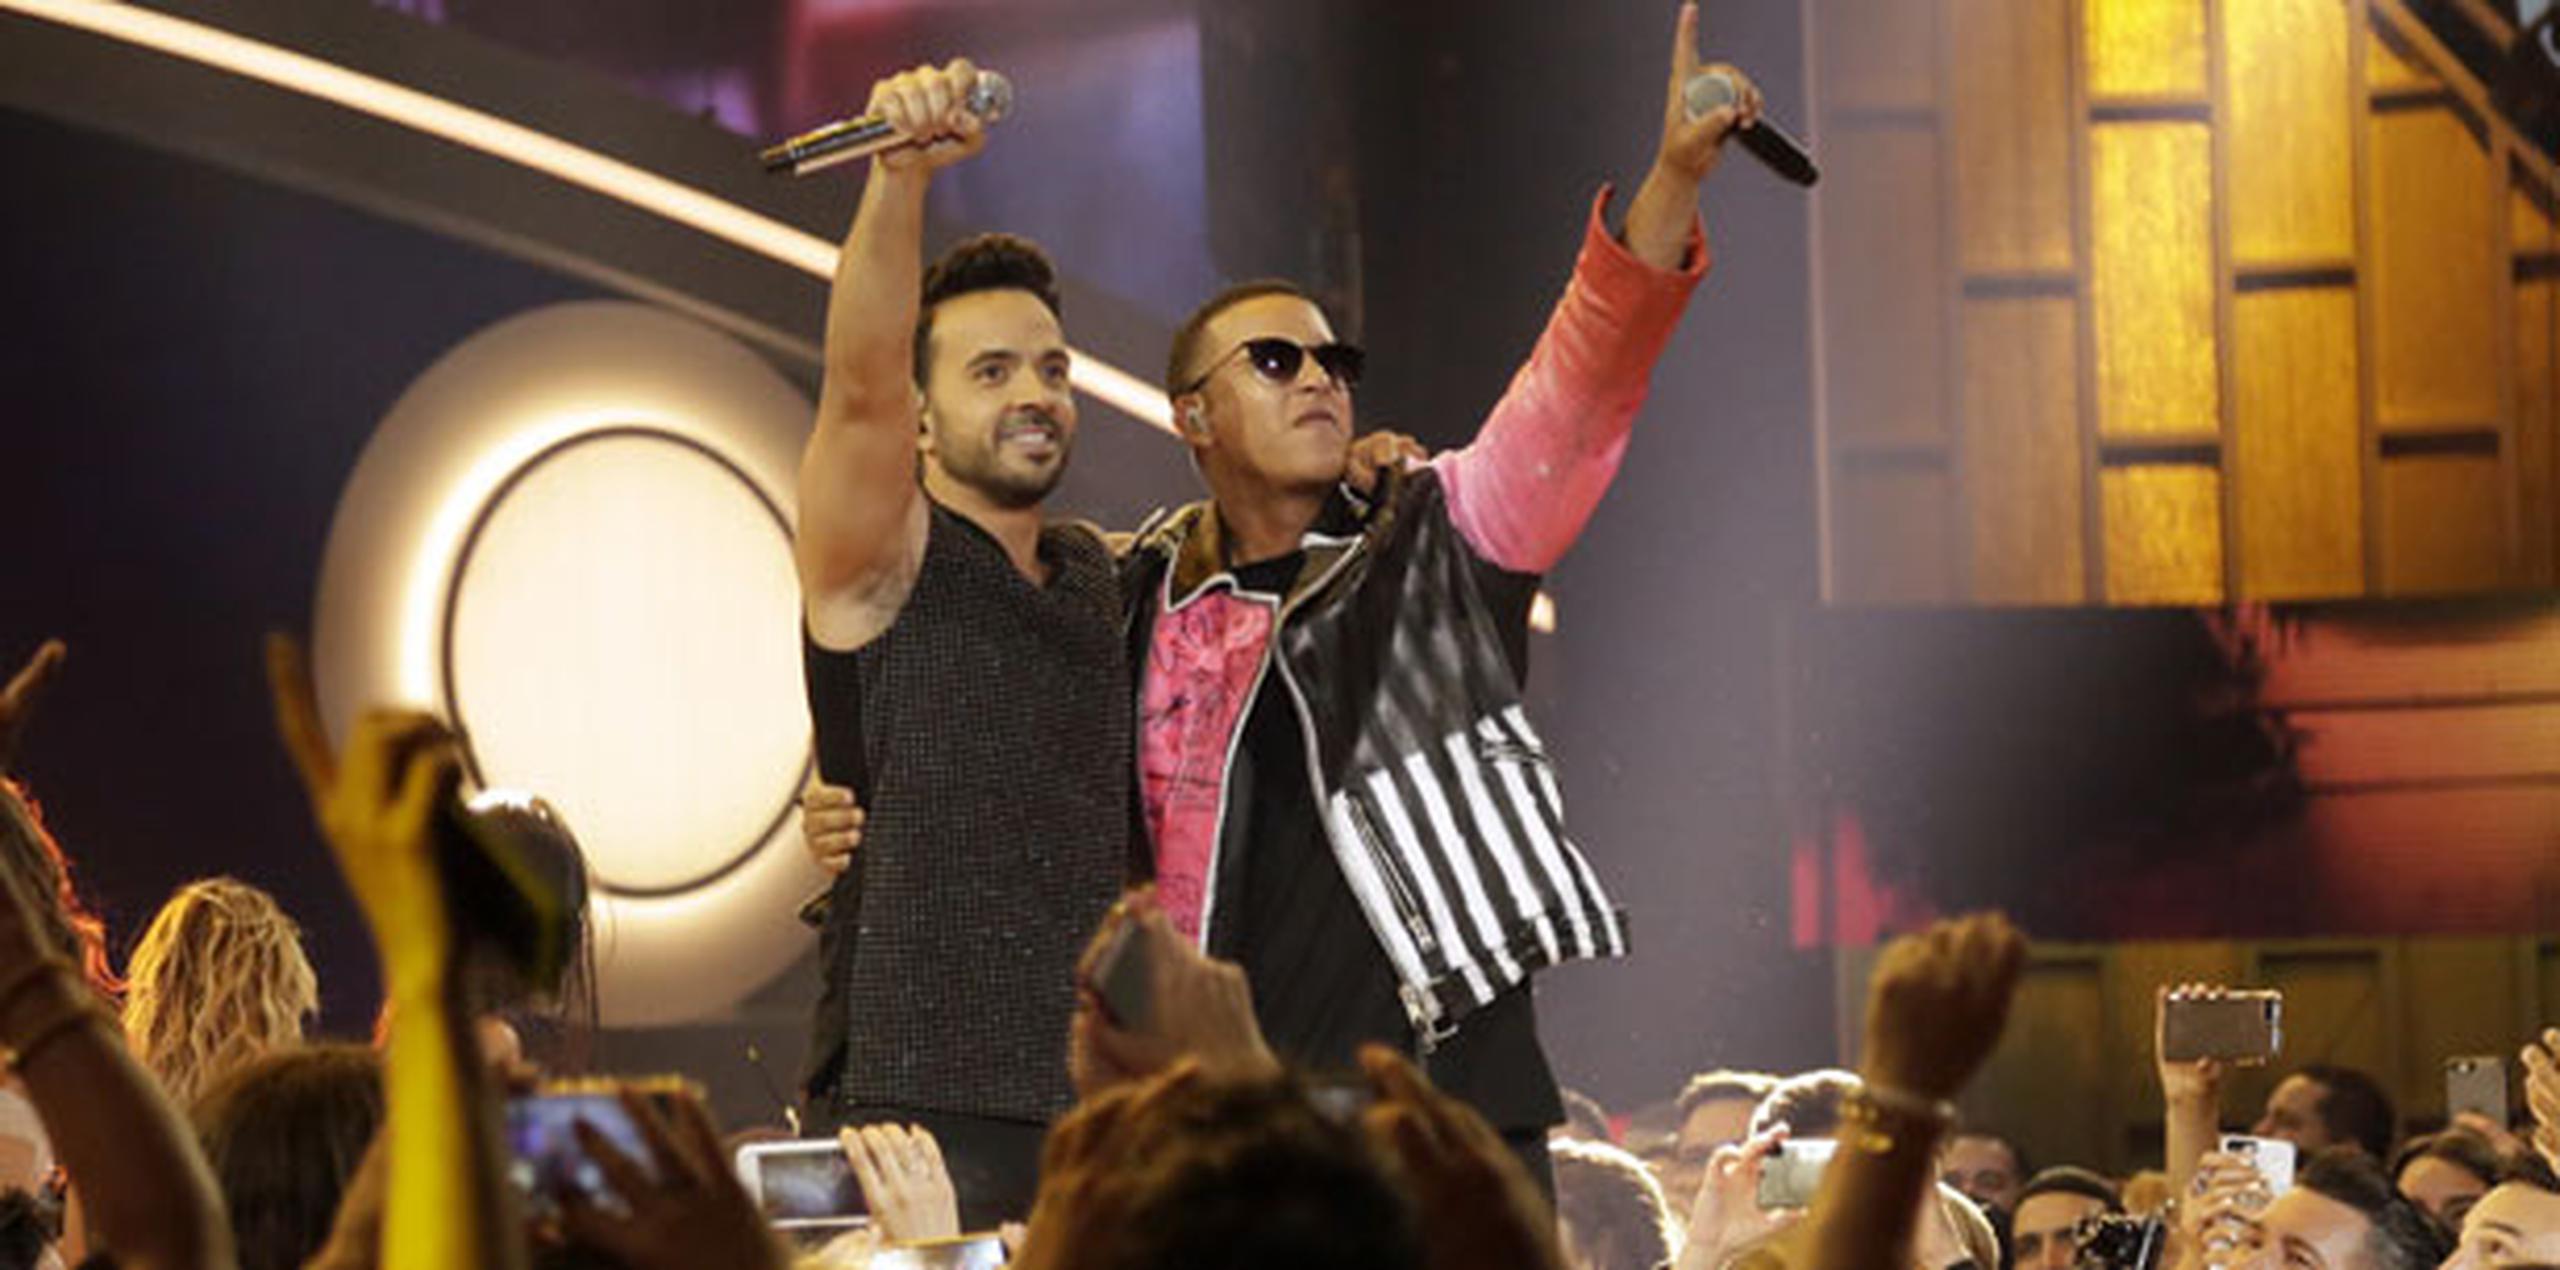 La revista especializada Forbes reseña que el fenómeno musical interpretado por los puertorriqueños Luis Fonsi y Daddy Yankee, que en días recientes brincó de la posición 48 a la número 9 del Top 10 entre las 100 canciones, de todos los géneros, en Estados Unidos. (Prensa Asociada)